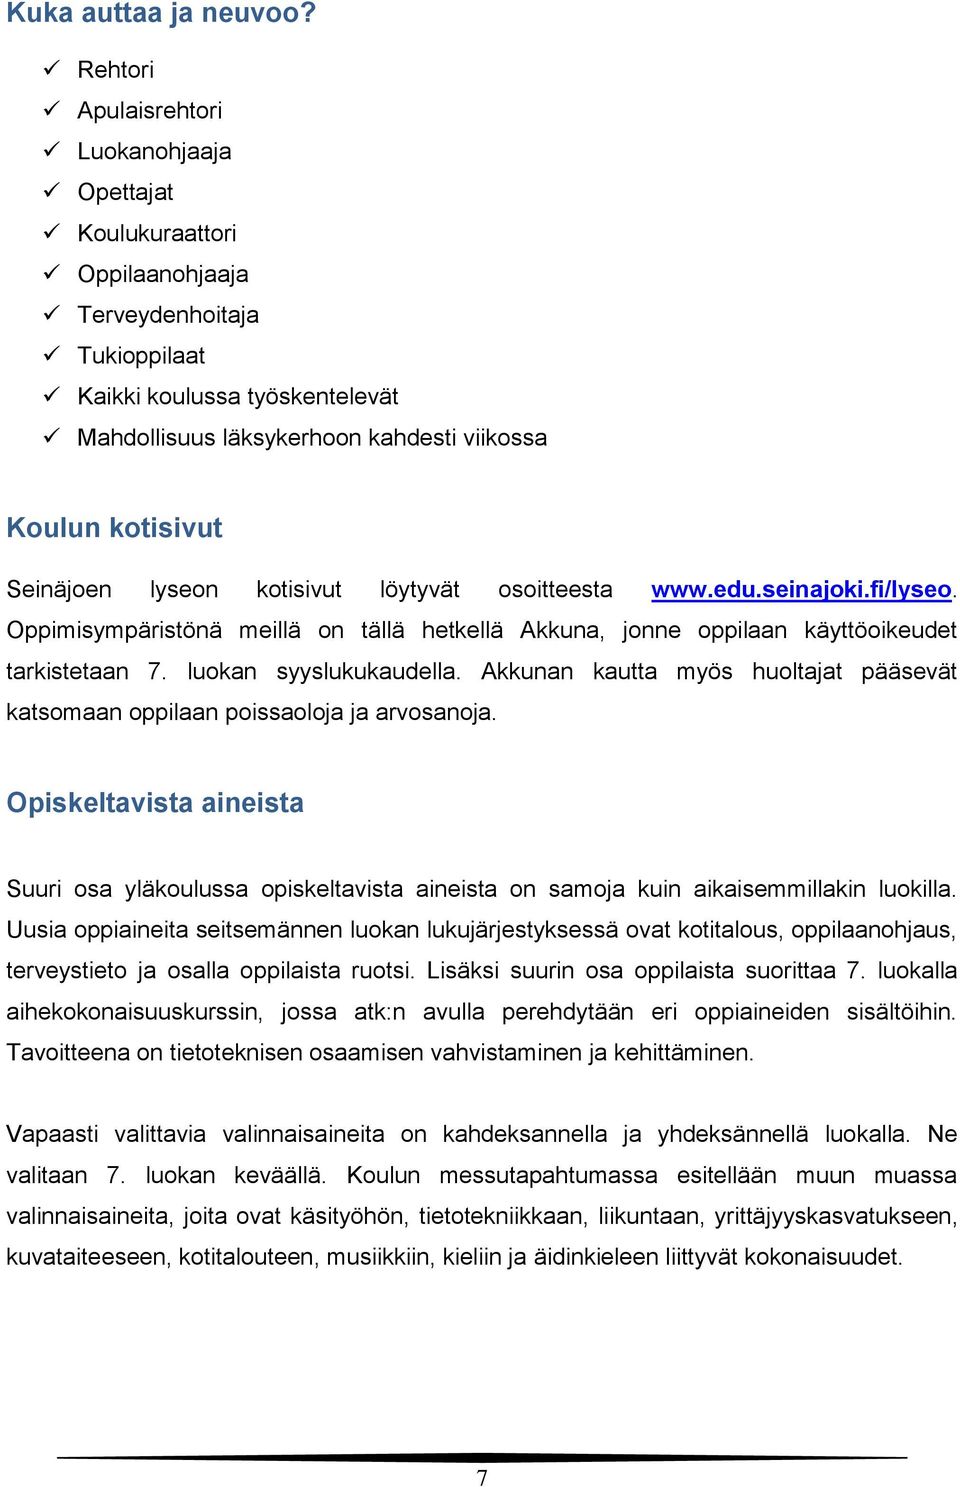 kotisivut Seinäjoen lyseon kotisivut löytyvät osoitteesta www.edu.seinajoki.fi/lyseo. Oppimisympäristönä meillä on tällä hetkellä Akkuna, jonne oppilaan käyttöoikeudet tarkistetaan 7.